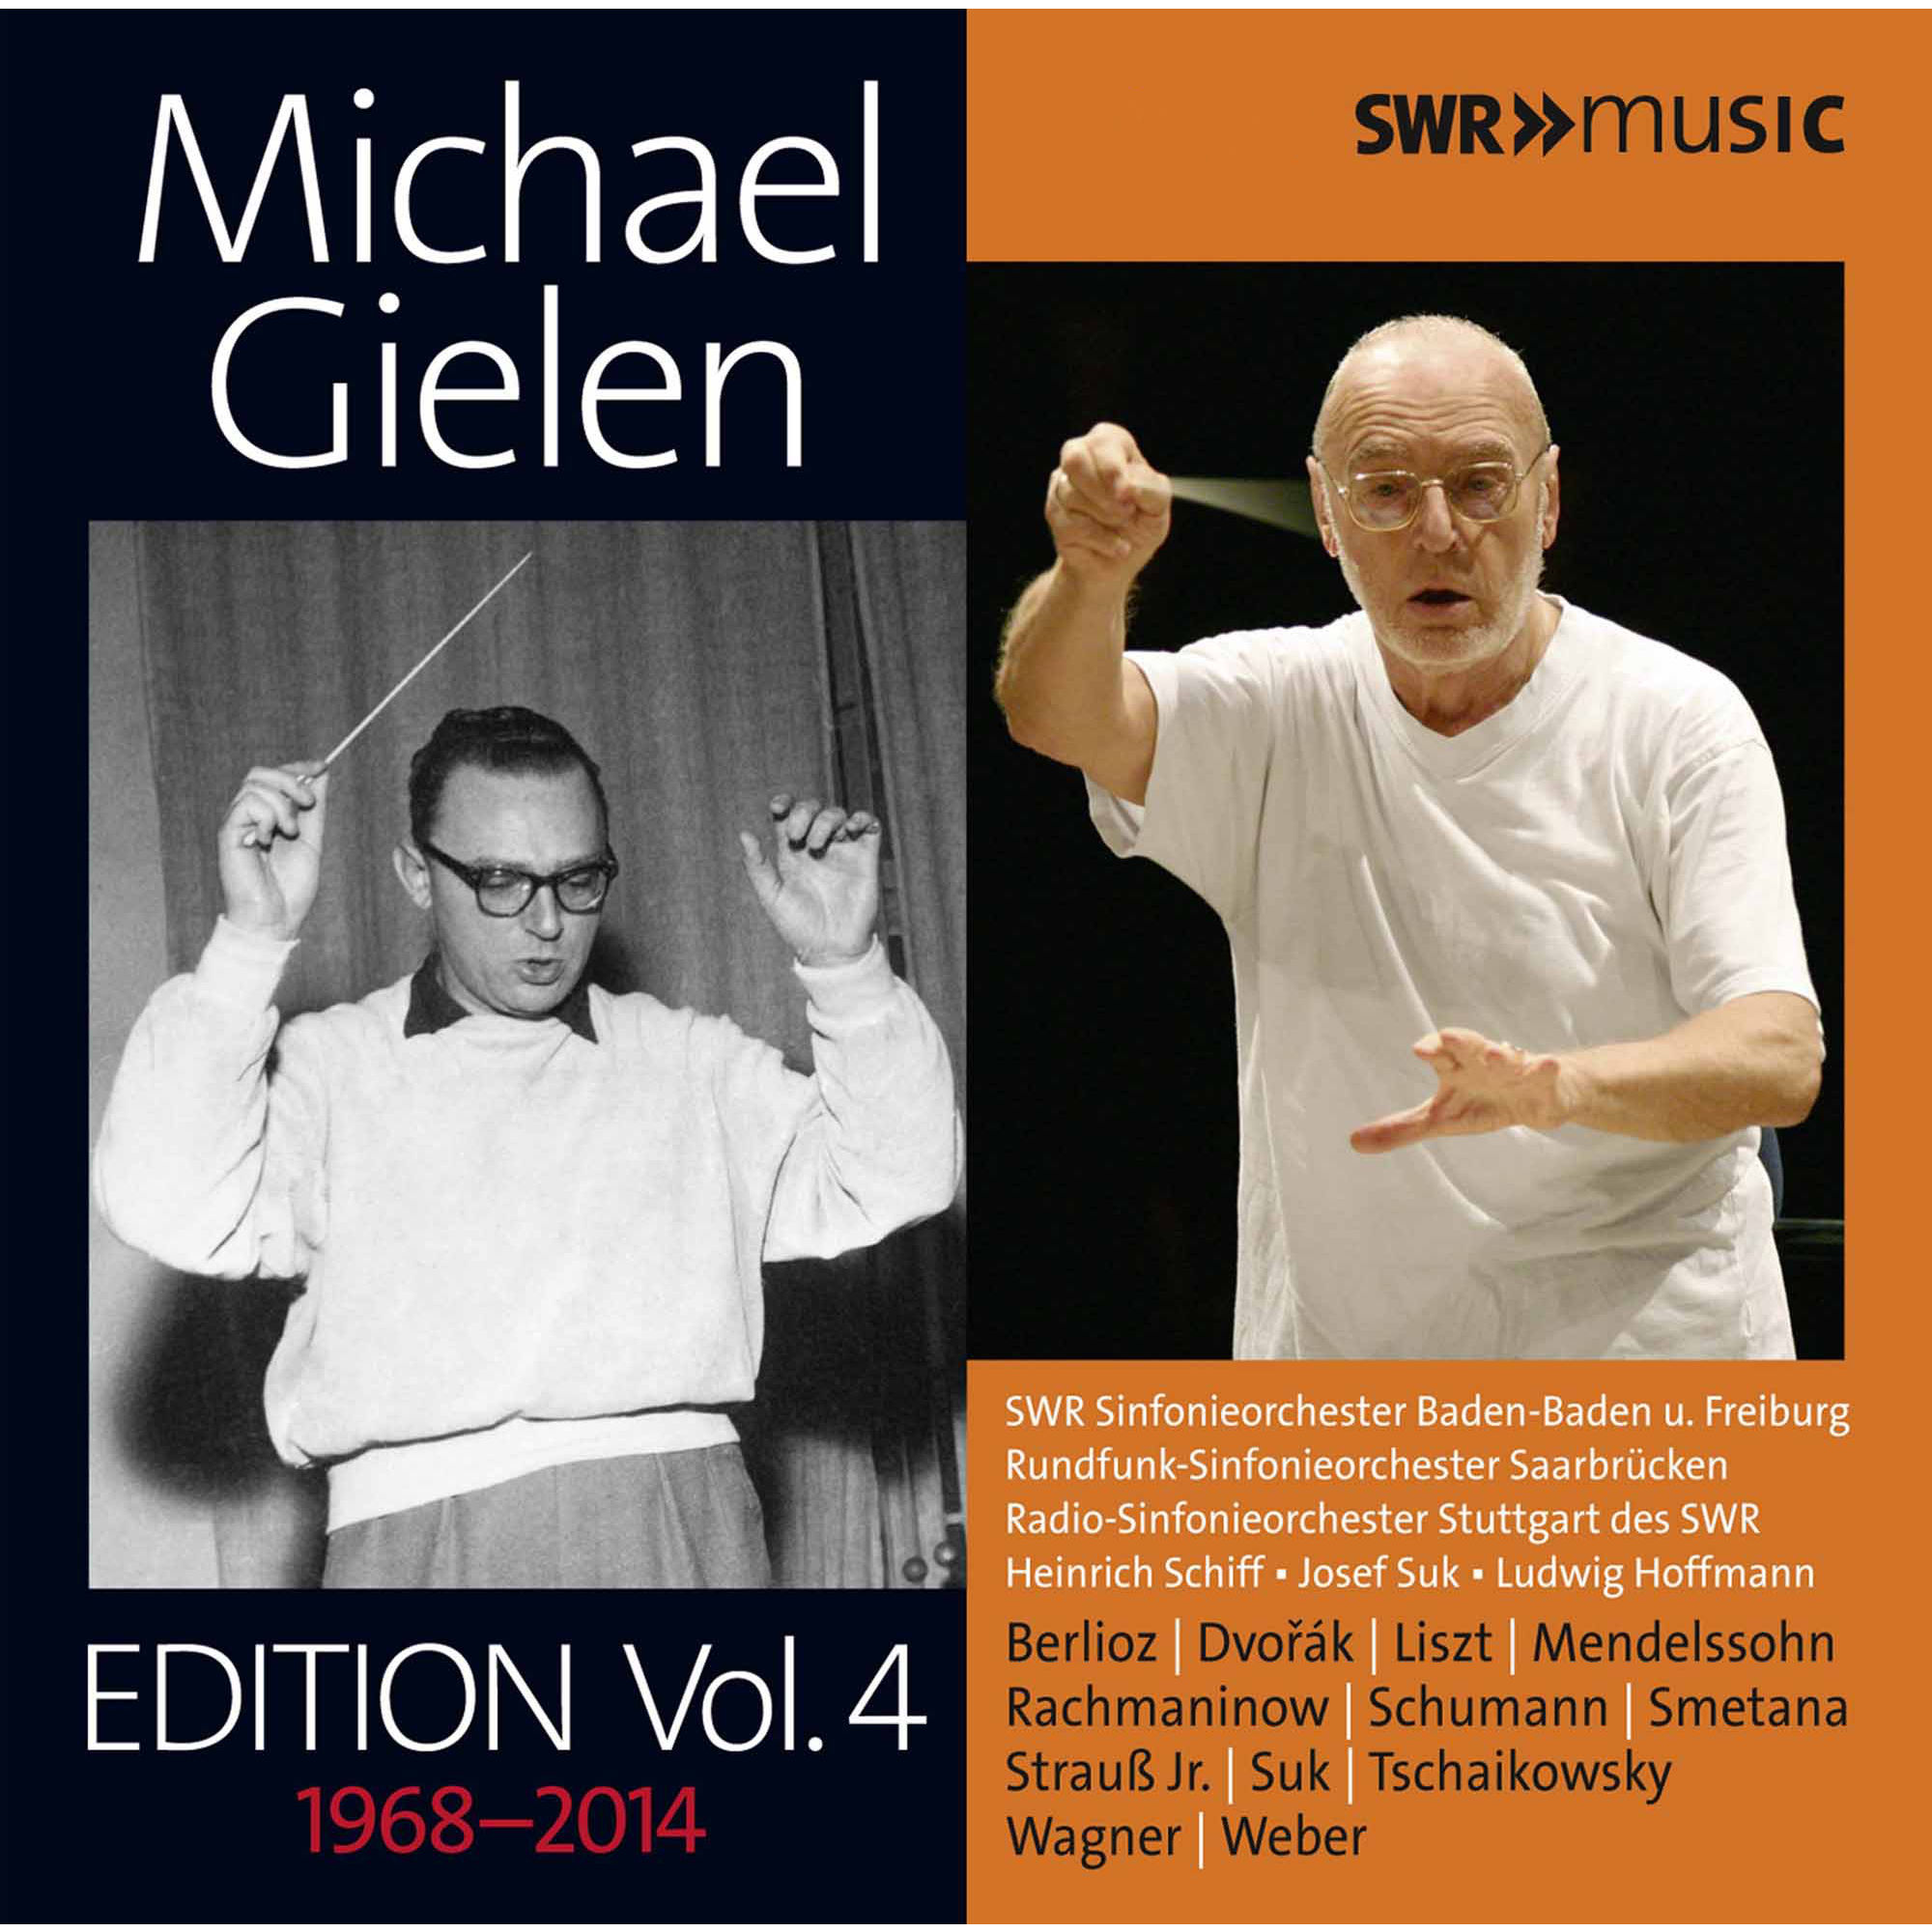 Rundfunk-Sinfonieorchester-Michael Gielen Edition Vol. 4 cd04 1968-2014